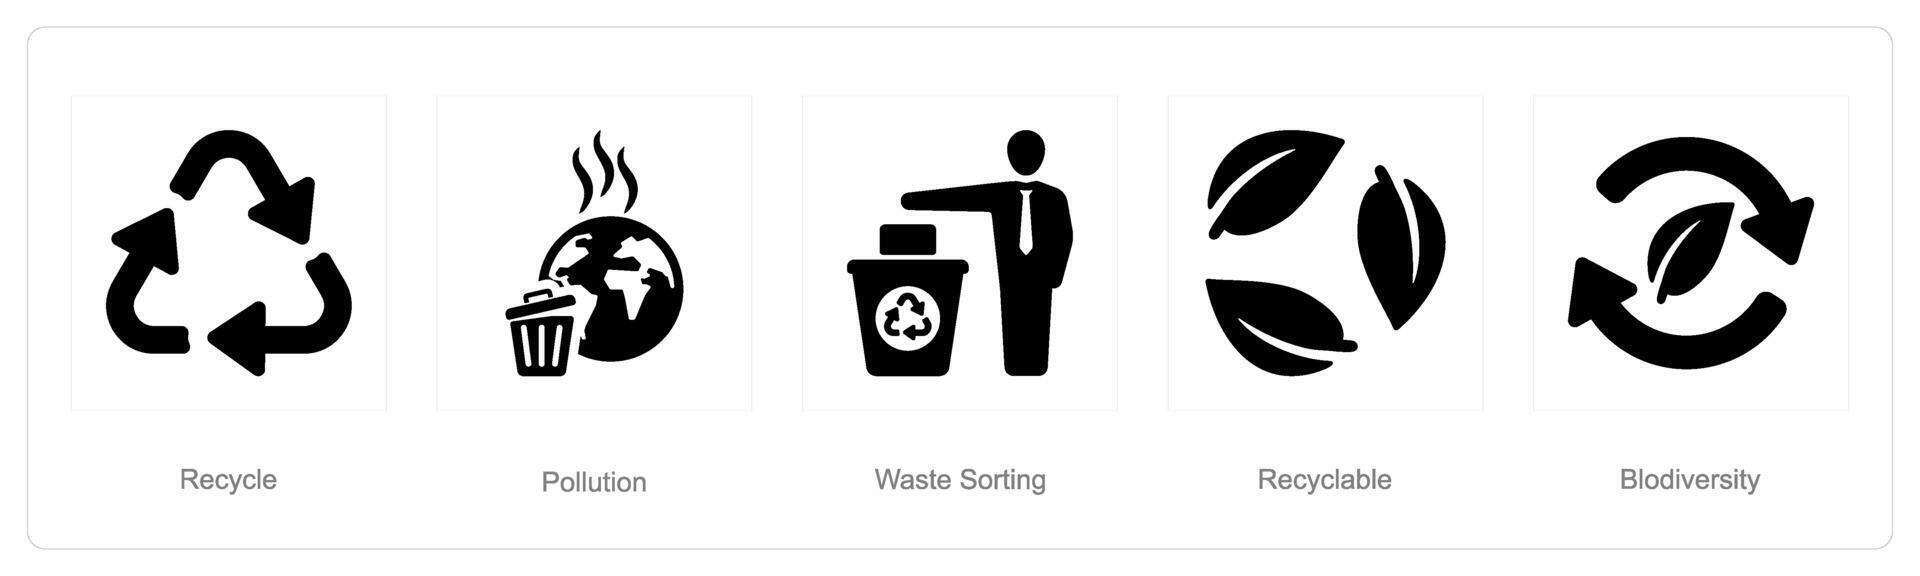 une ensemble de 5 écologie Icônes comme recycler, pollution, déchets tri vecteur